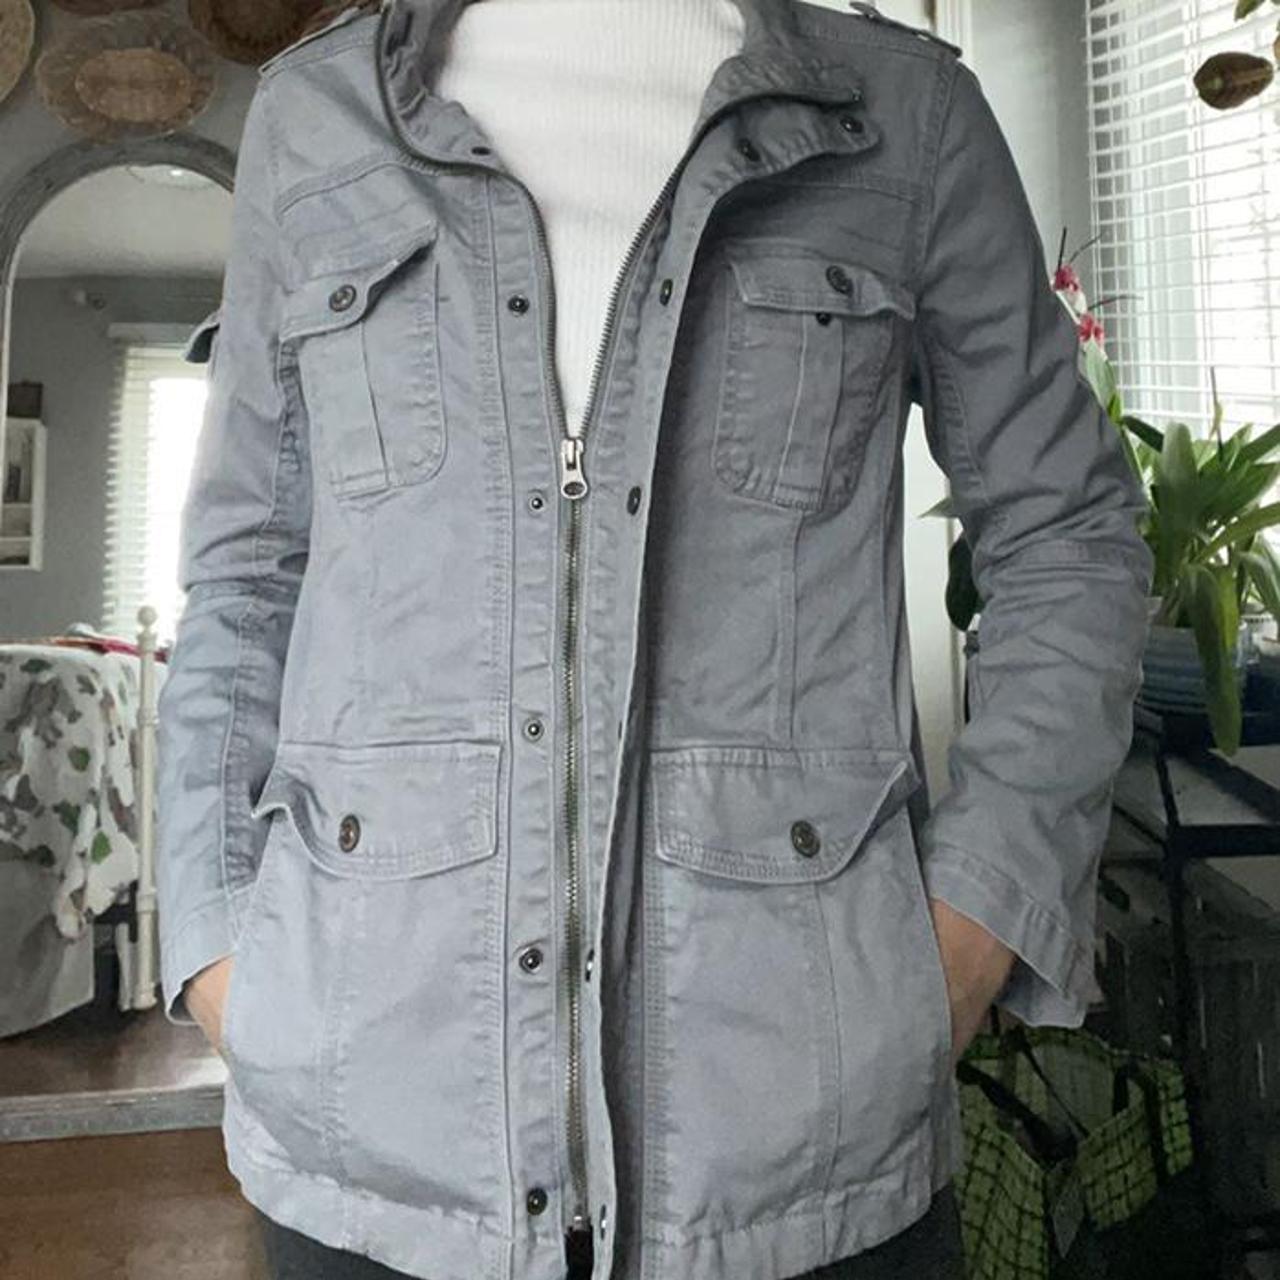 Kensie Jeans Utility Jacket in Light Grey Size... - Depop